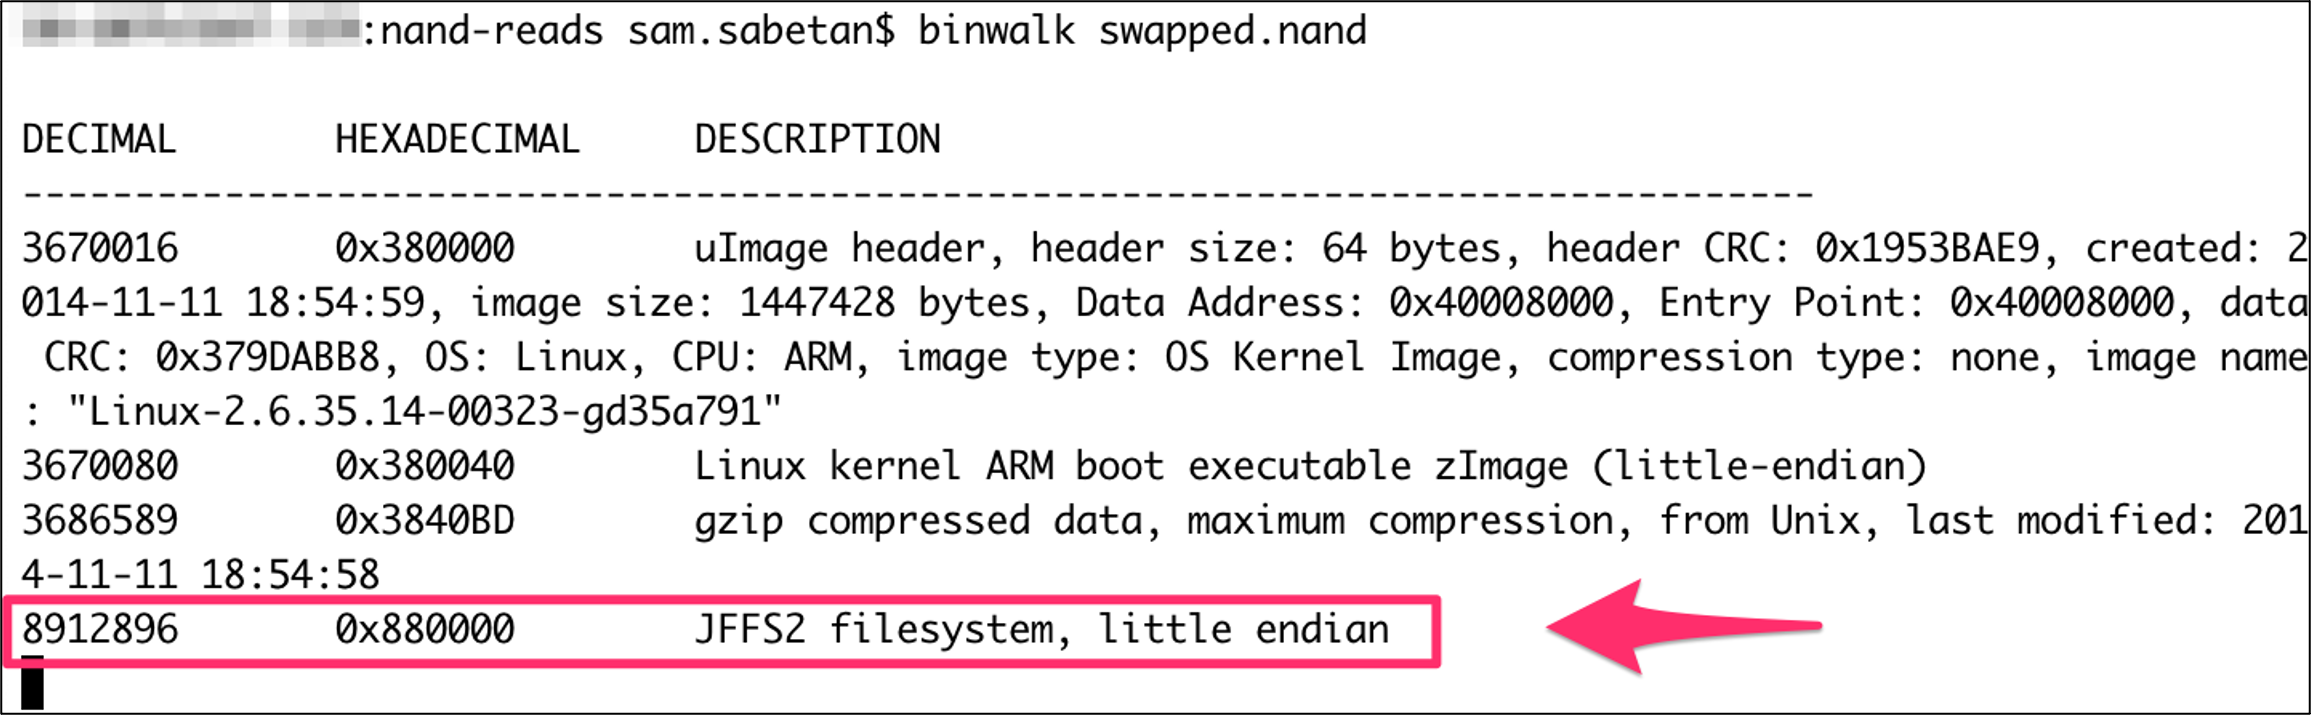 binwalk scan of fixed NAND dump